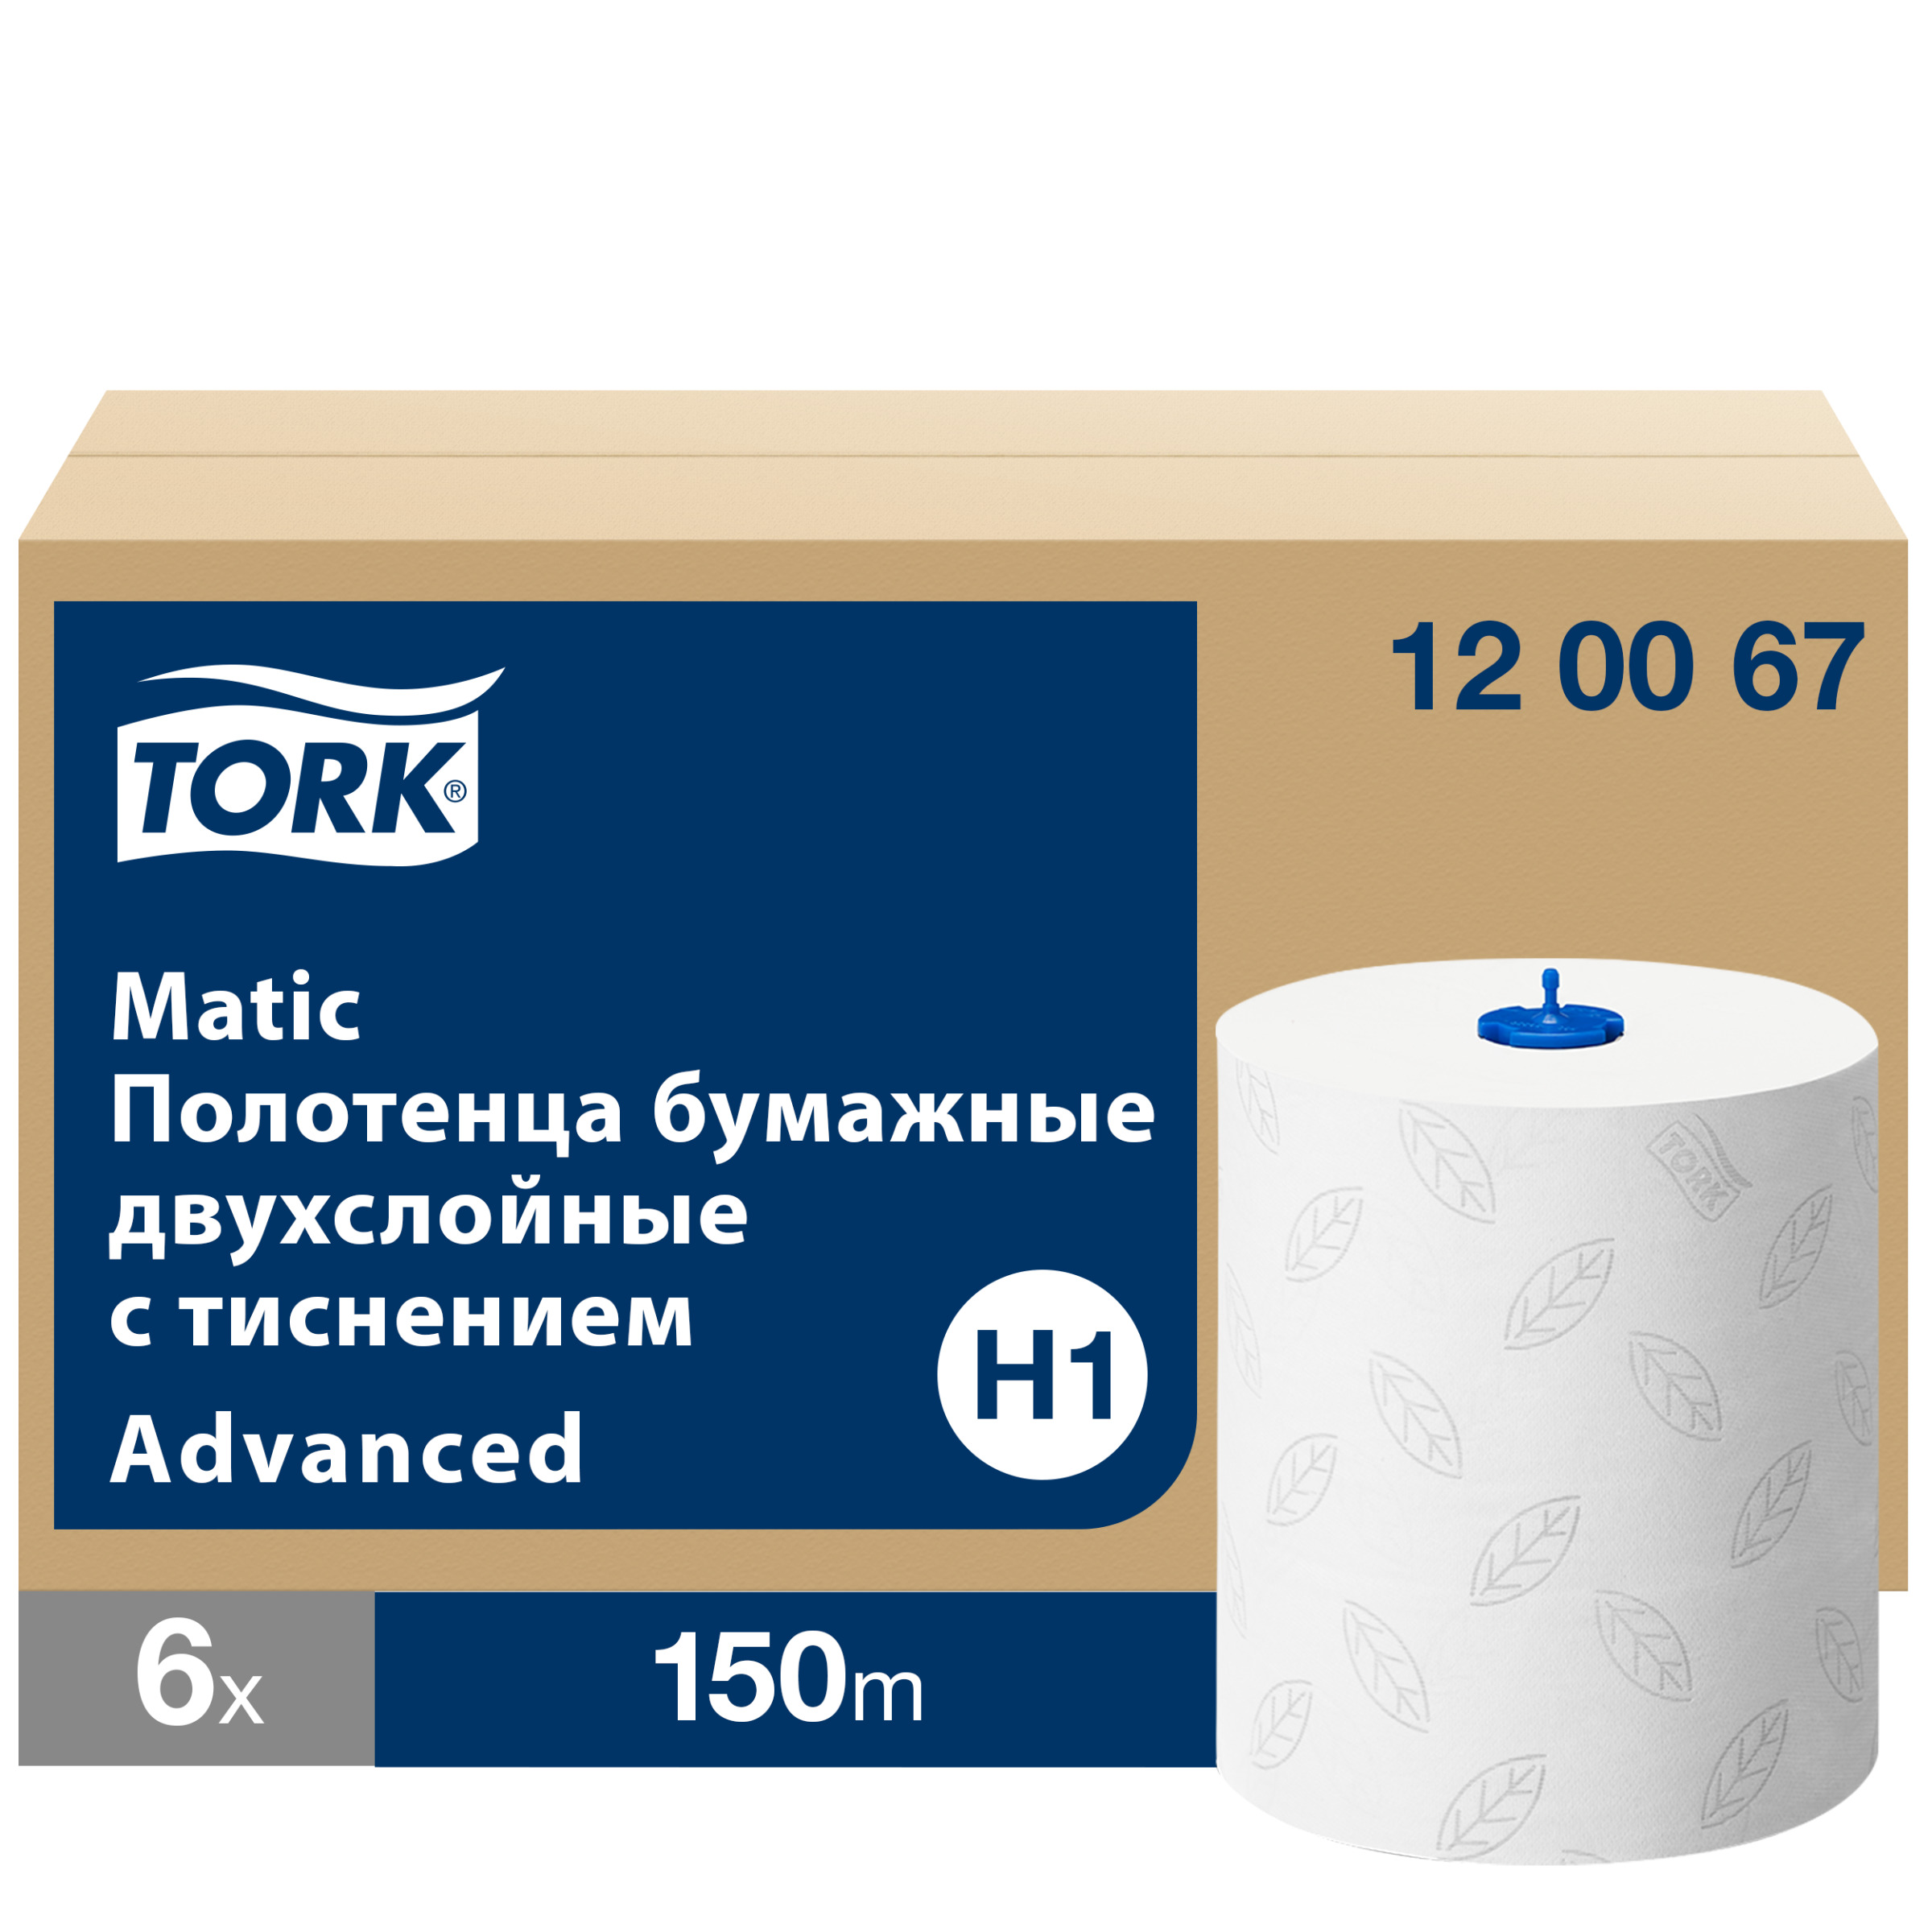 Полотенца tork matic. 120067 Tork matic Advanced. Полотенца бумажные Tork matic Advanced 120067. Полотенца бумажные Tork h1. 120067 Tork matic полотенца в рулонах.